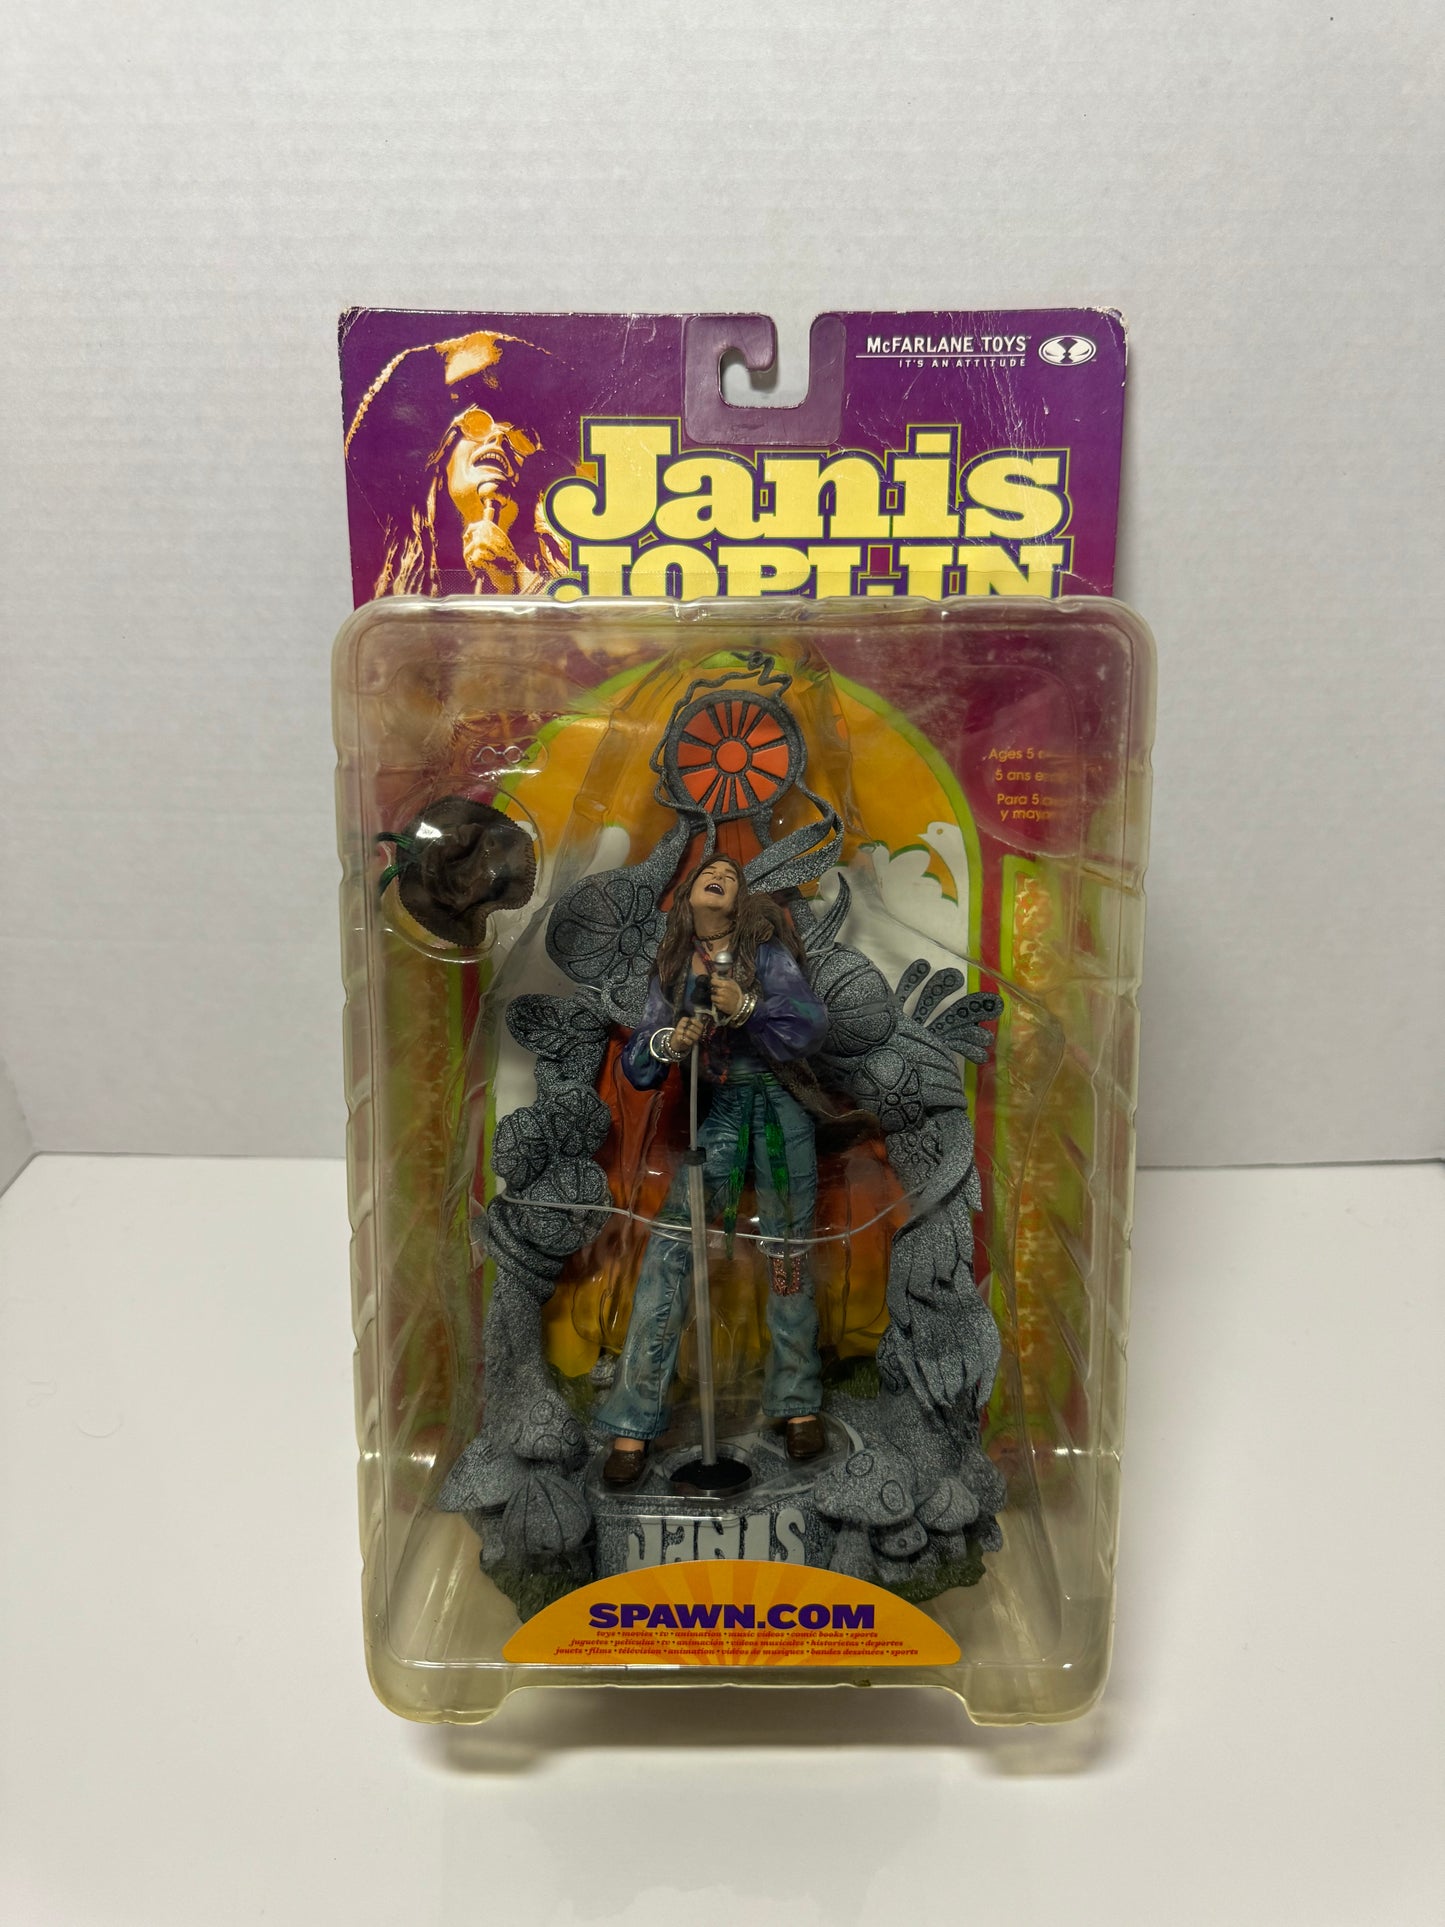 Janis Joplin figure